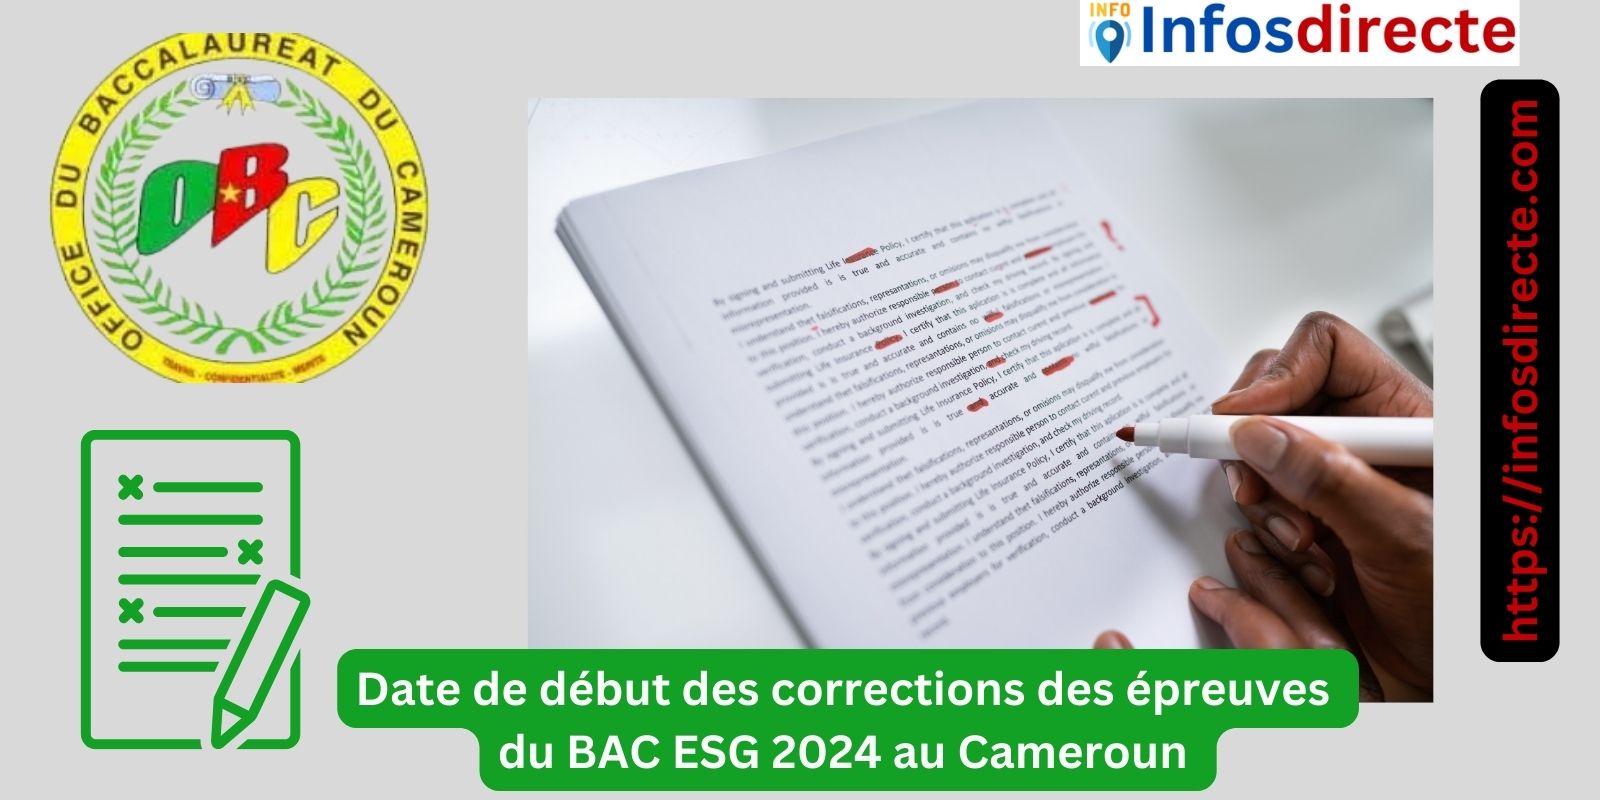 La date de début des corrections des épreuves du BAC ESG 2024 au Cameroun enfin connue